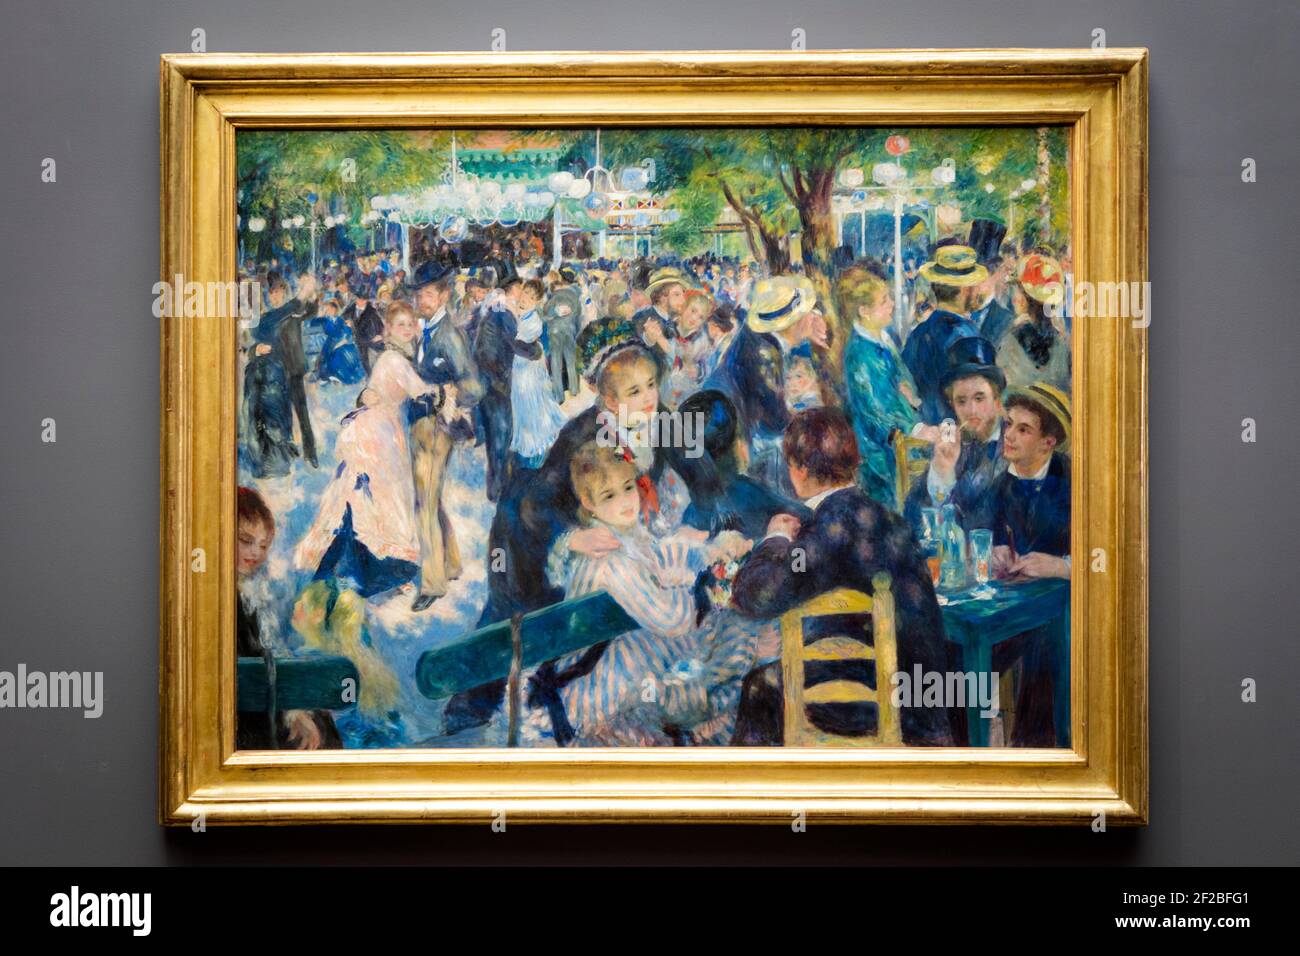 Bal du Moulin de la Galette - Pierre-Auguste Renoir's famous masterpiece on display at Musee d'Orsay, Paris, France Stock Photo